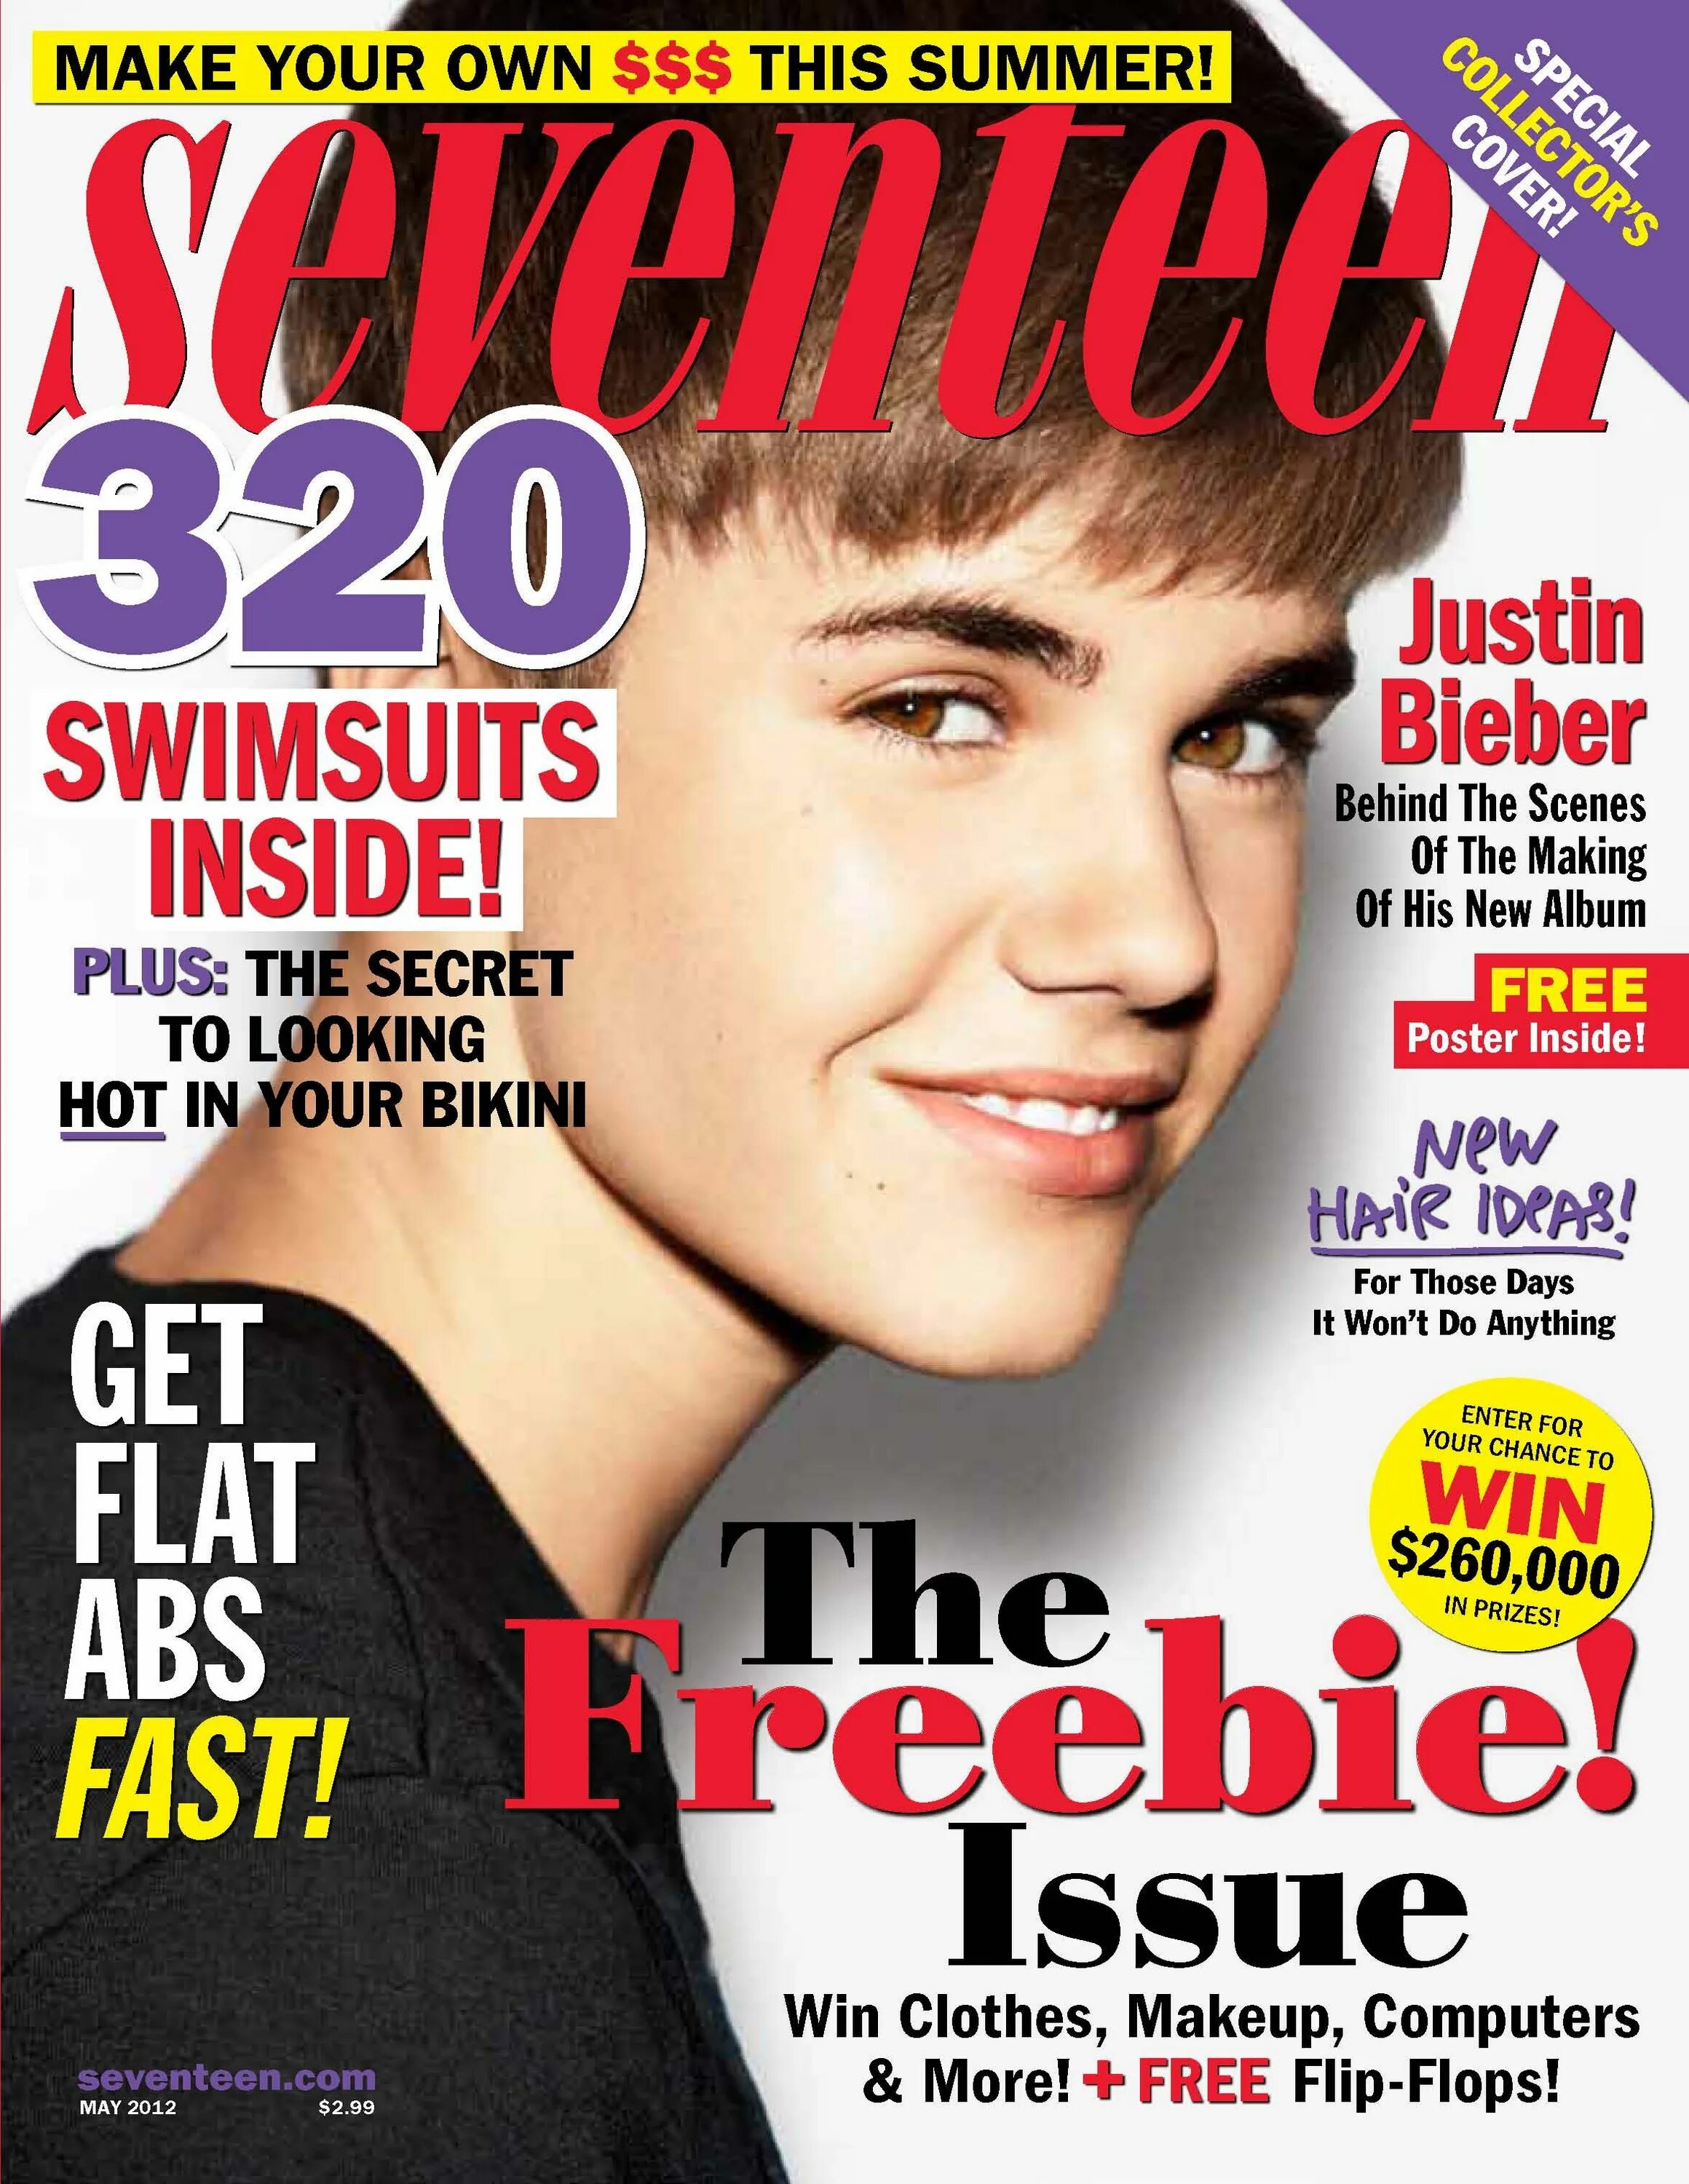 Justin Bieber 2012 обложка. Джастин Бибер журнал. Обложки журналов для подростков. Молодежные журналы. Magazines in english